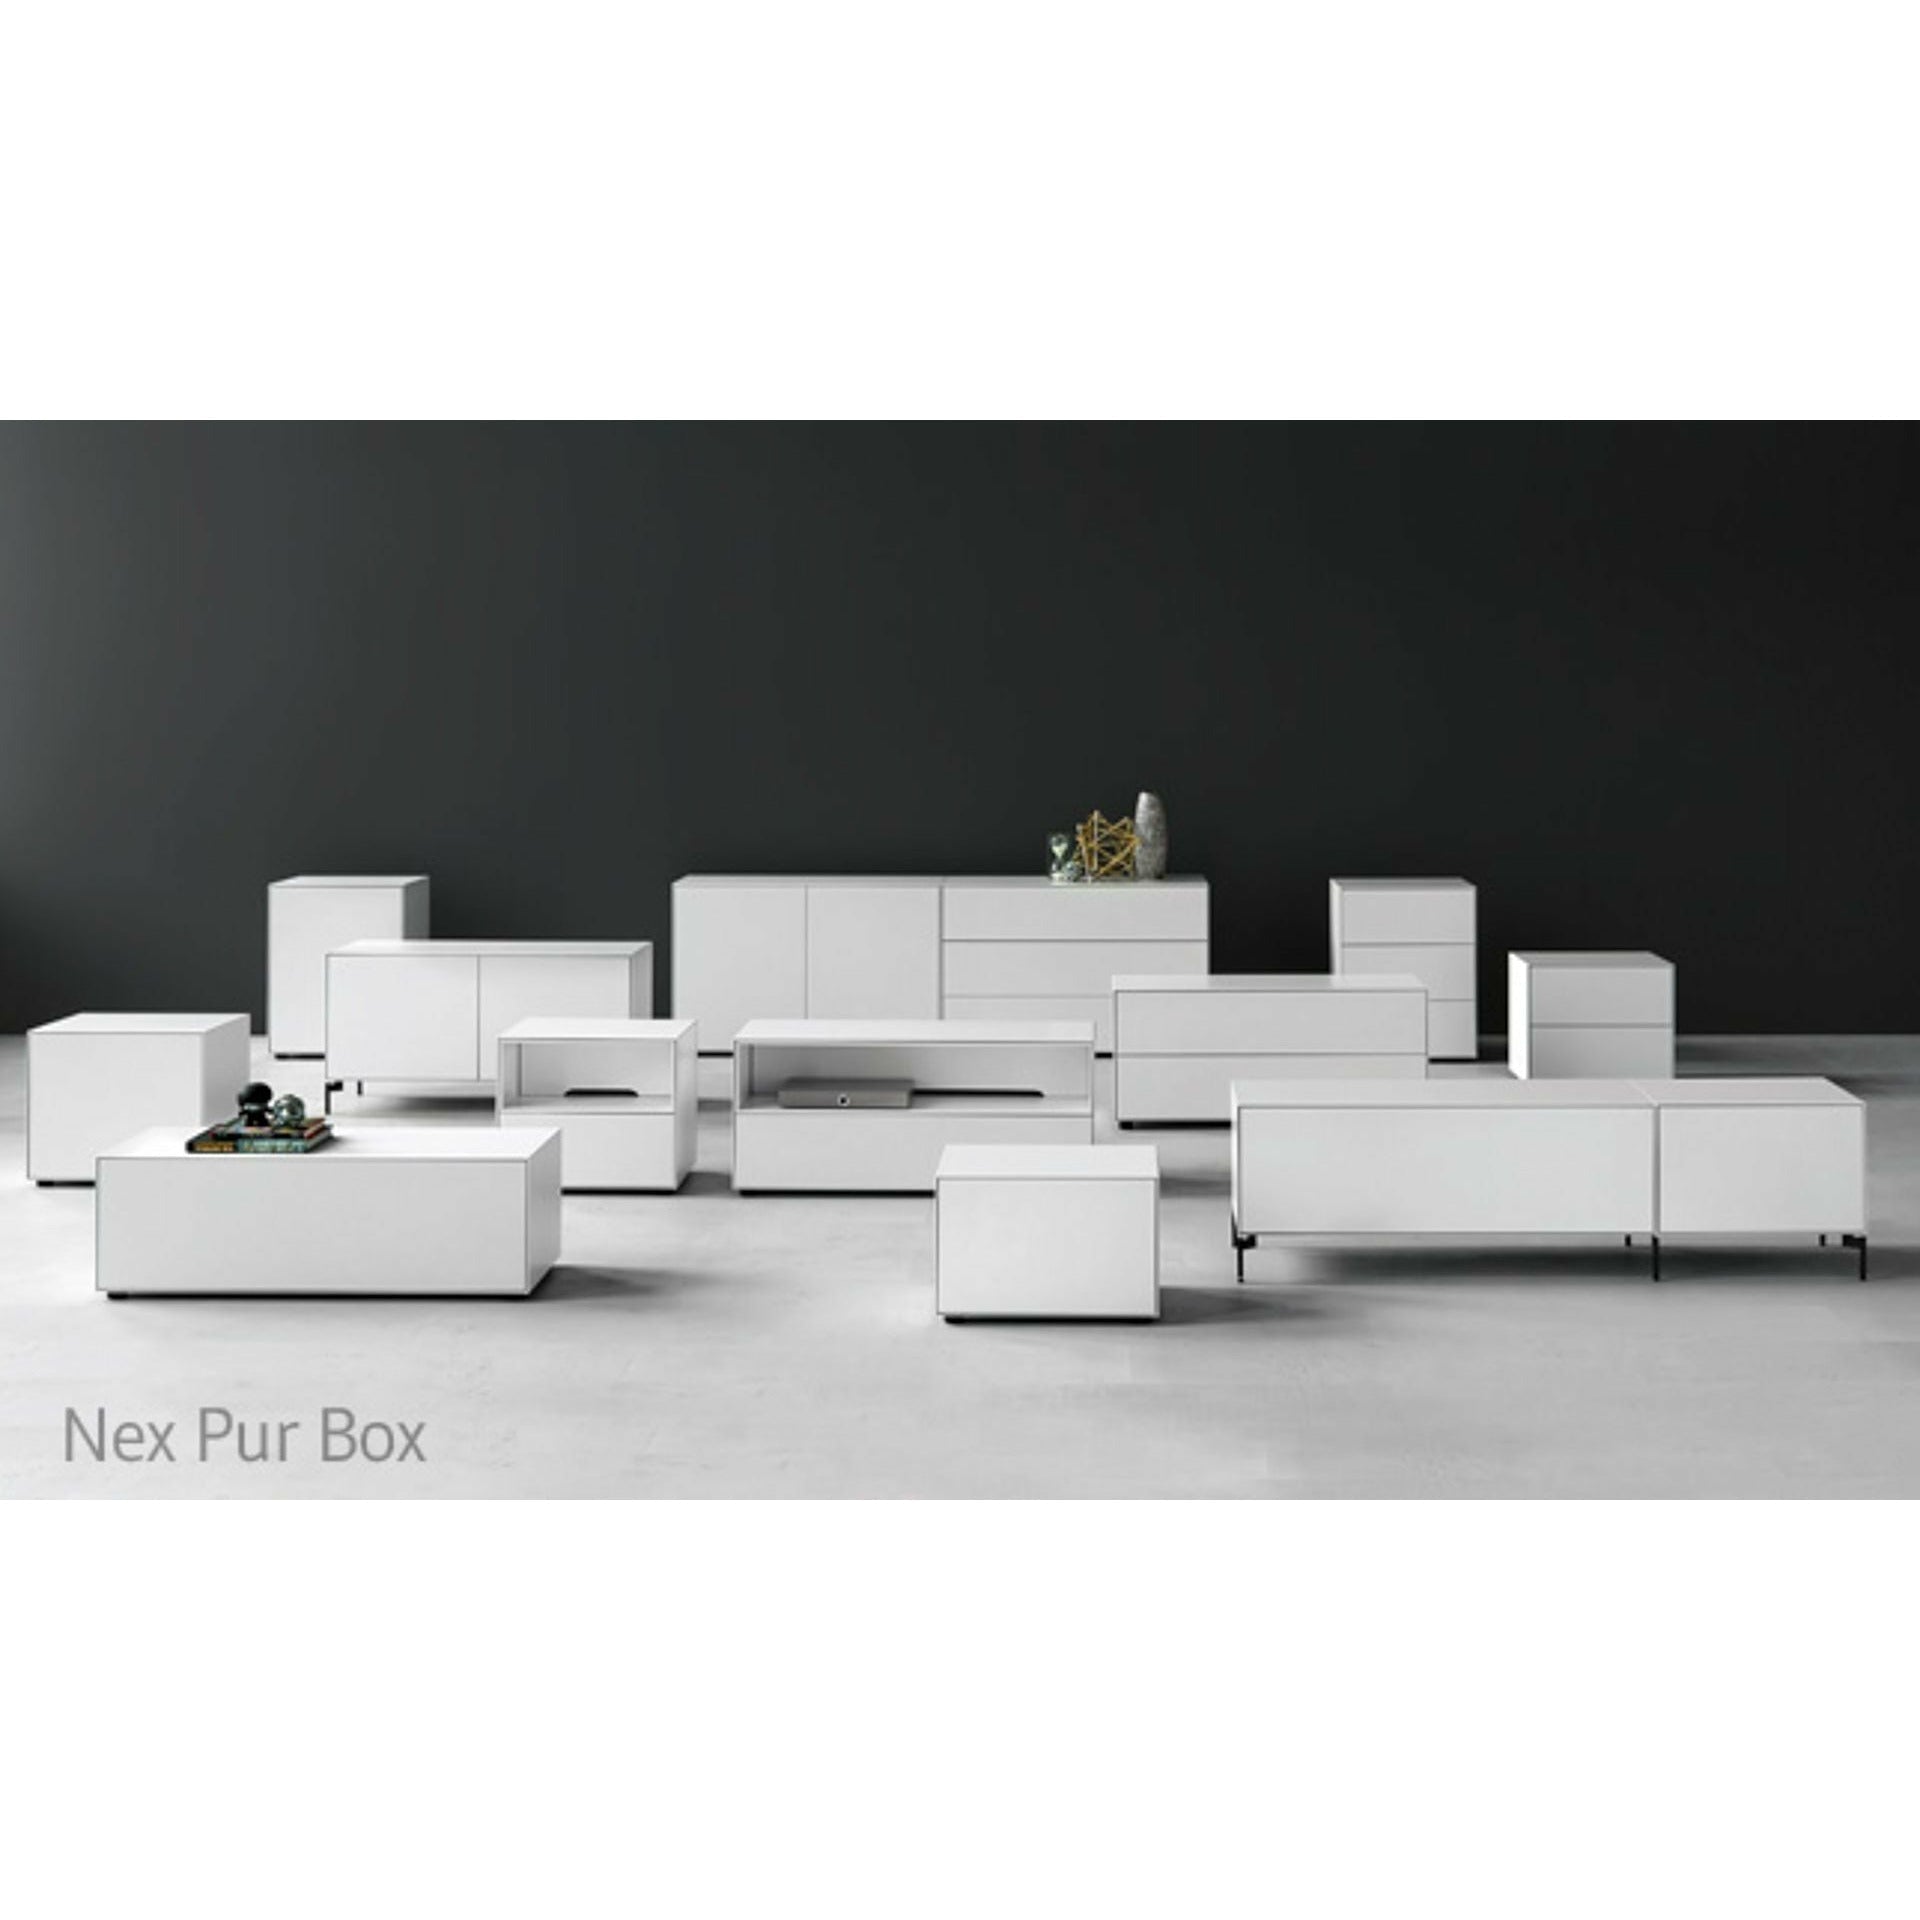 Piure Nex Pur Box Media Flap Hx W 37,5x180 Cm, 1 Shelf